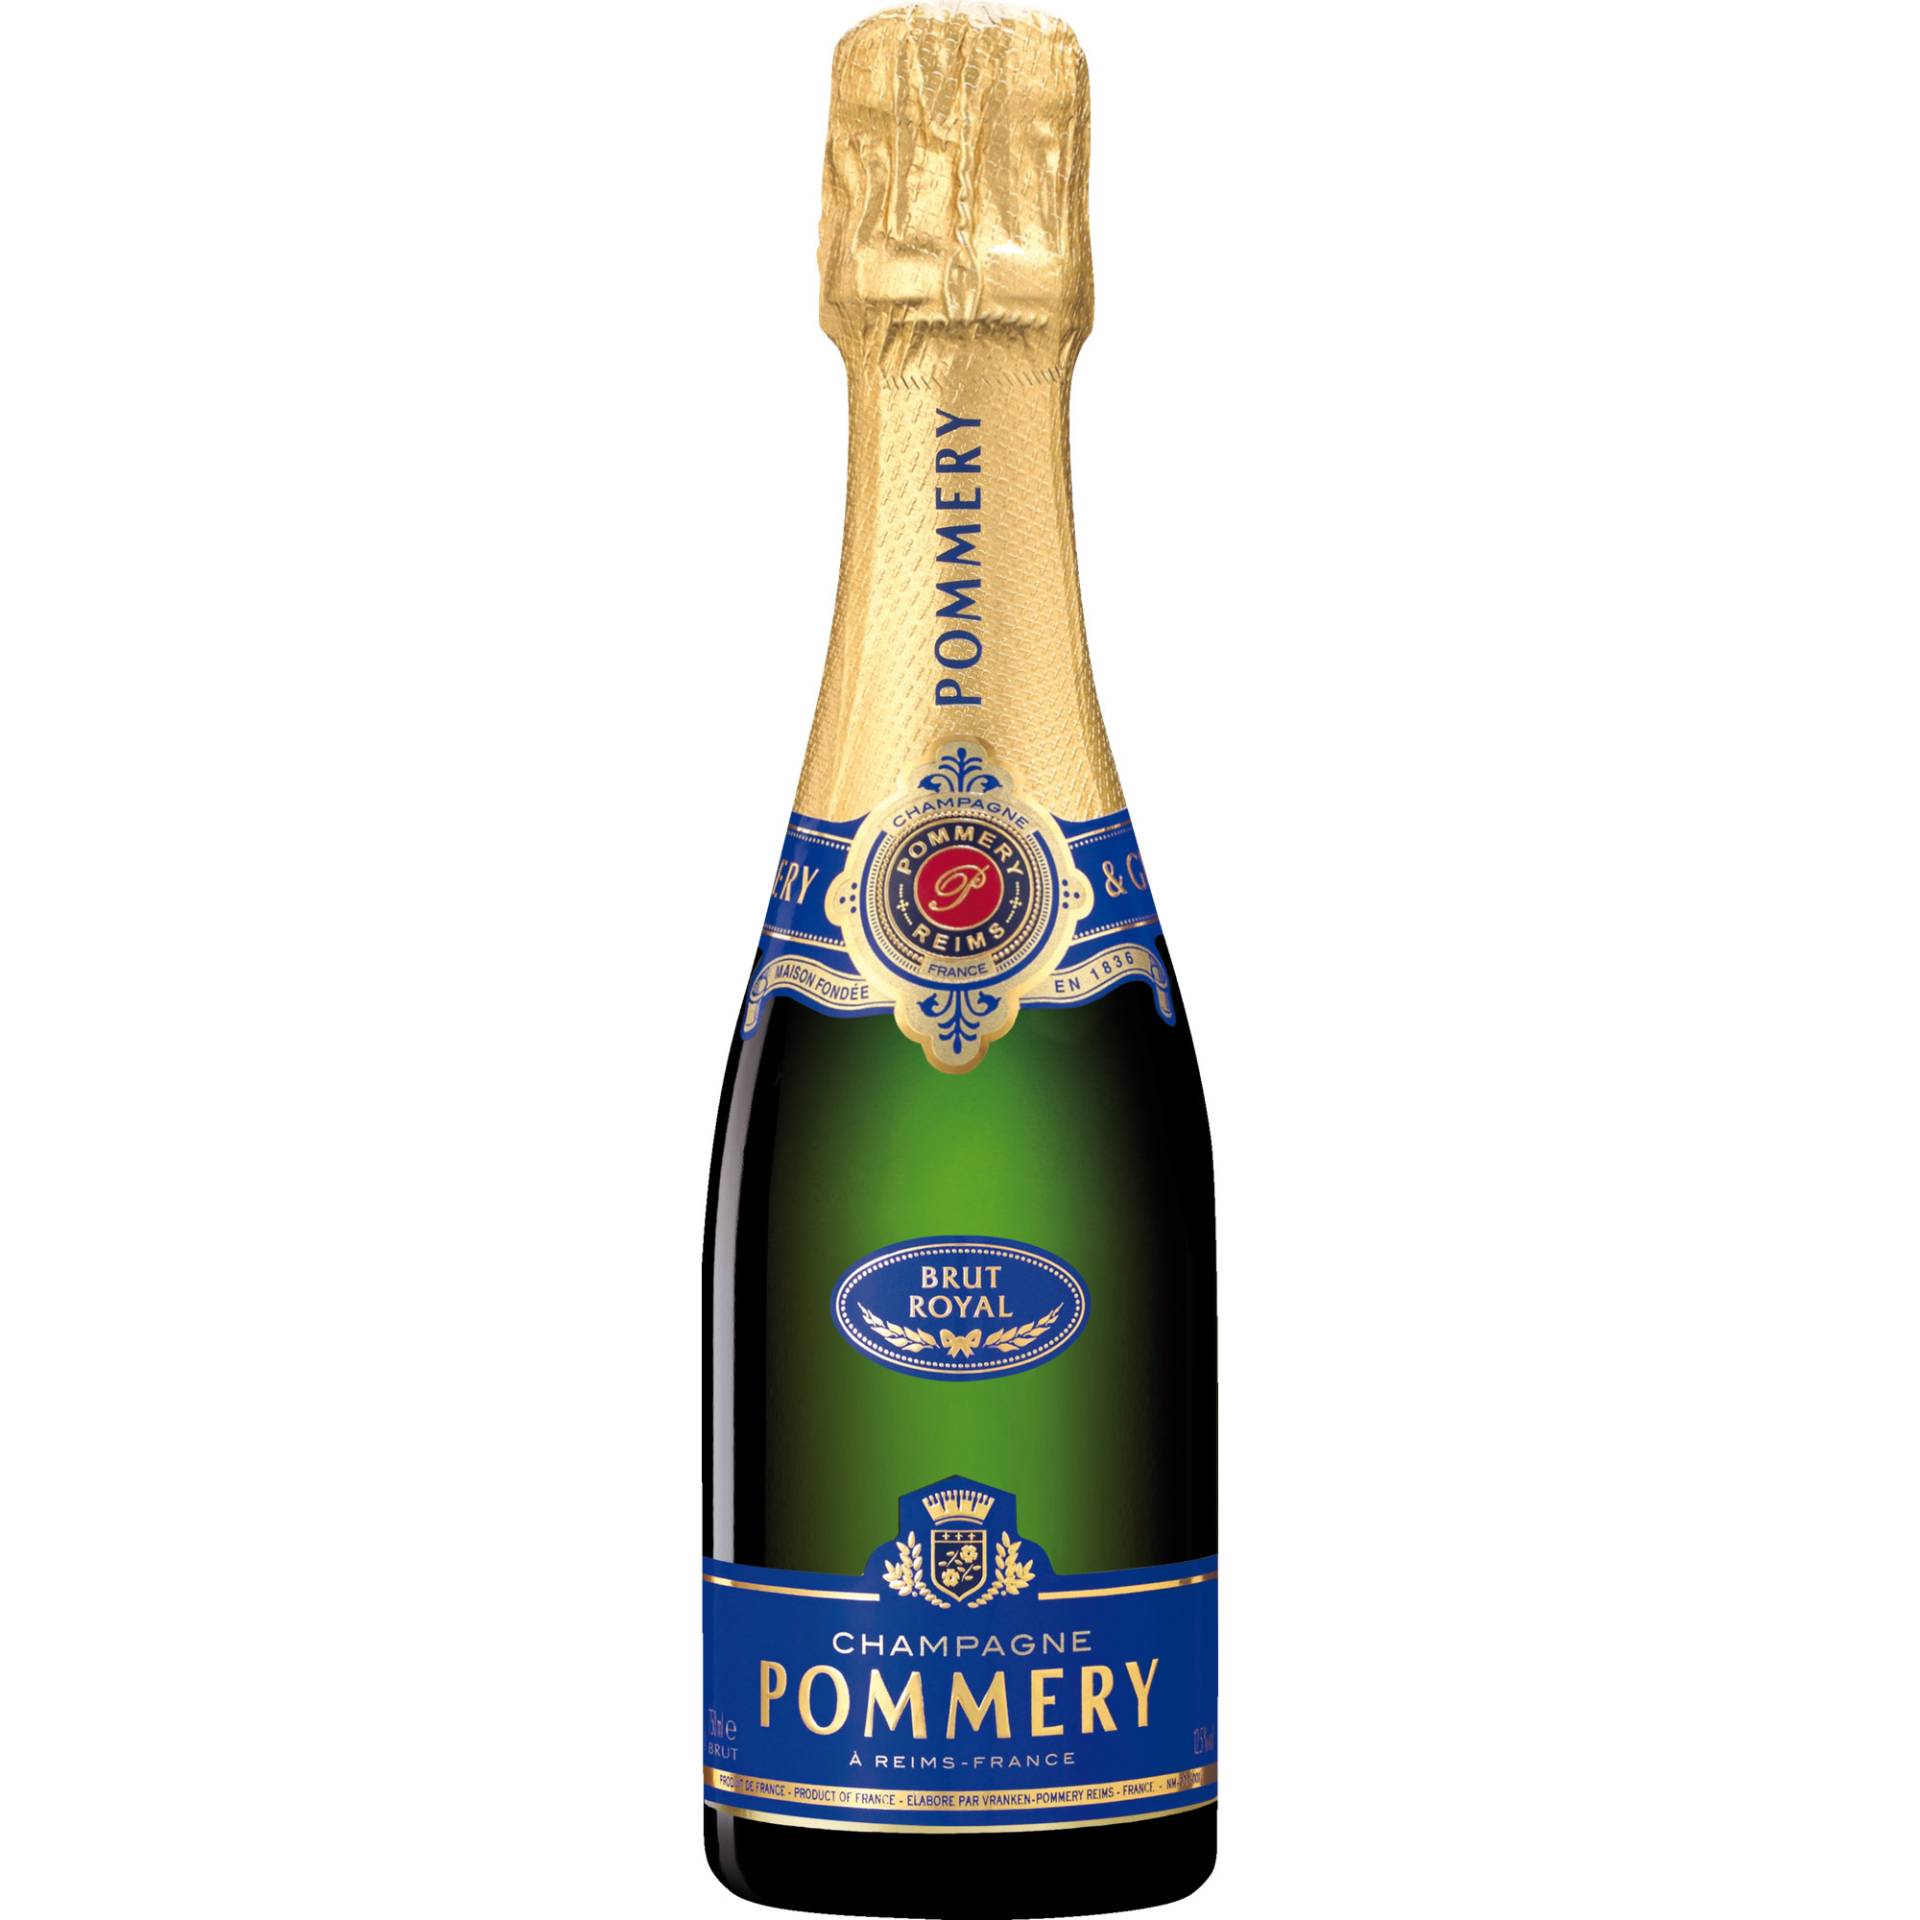 Champagne Pommery Royal, Brut, Champagne AC, 0,2 L, Champagne, Schaumwein von Vranken-Pommery - 51100 Reims - France